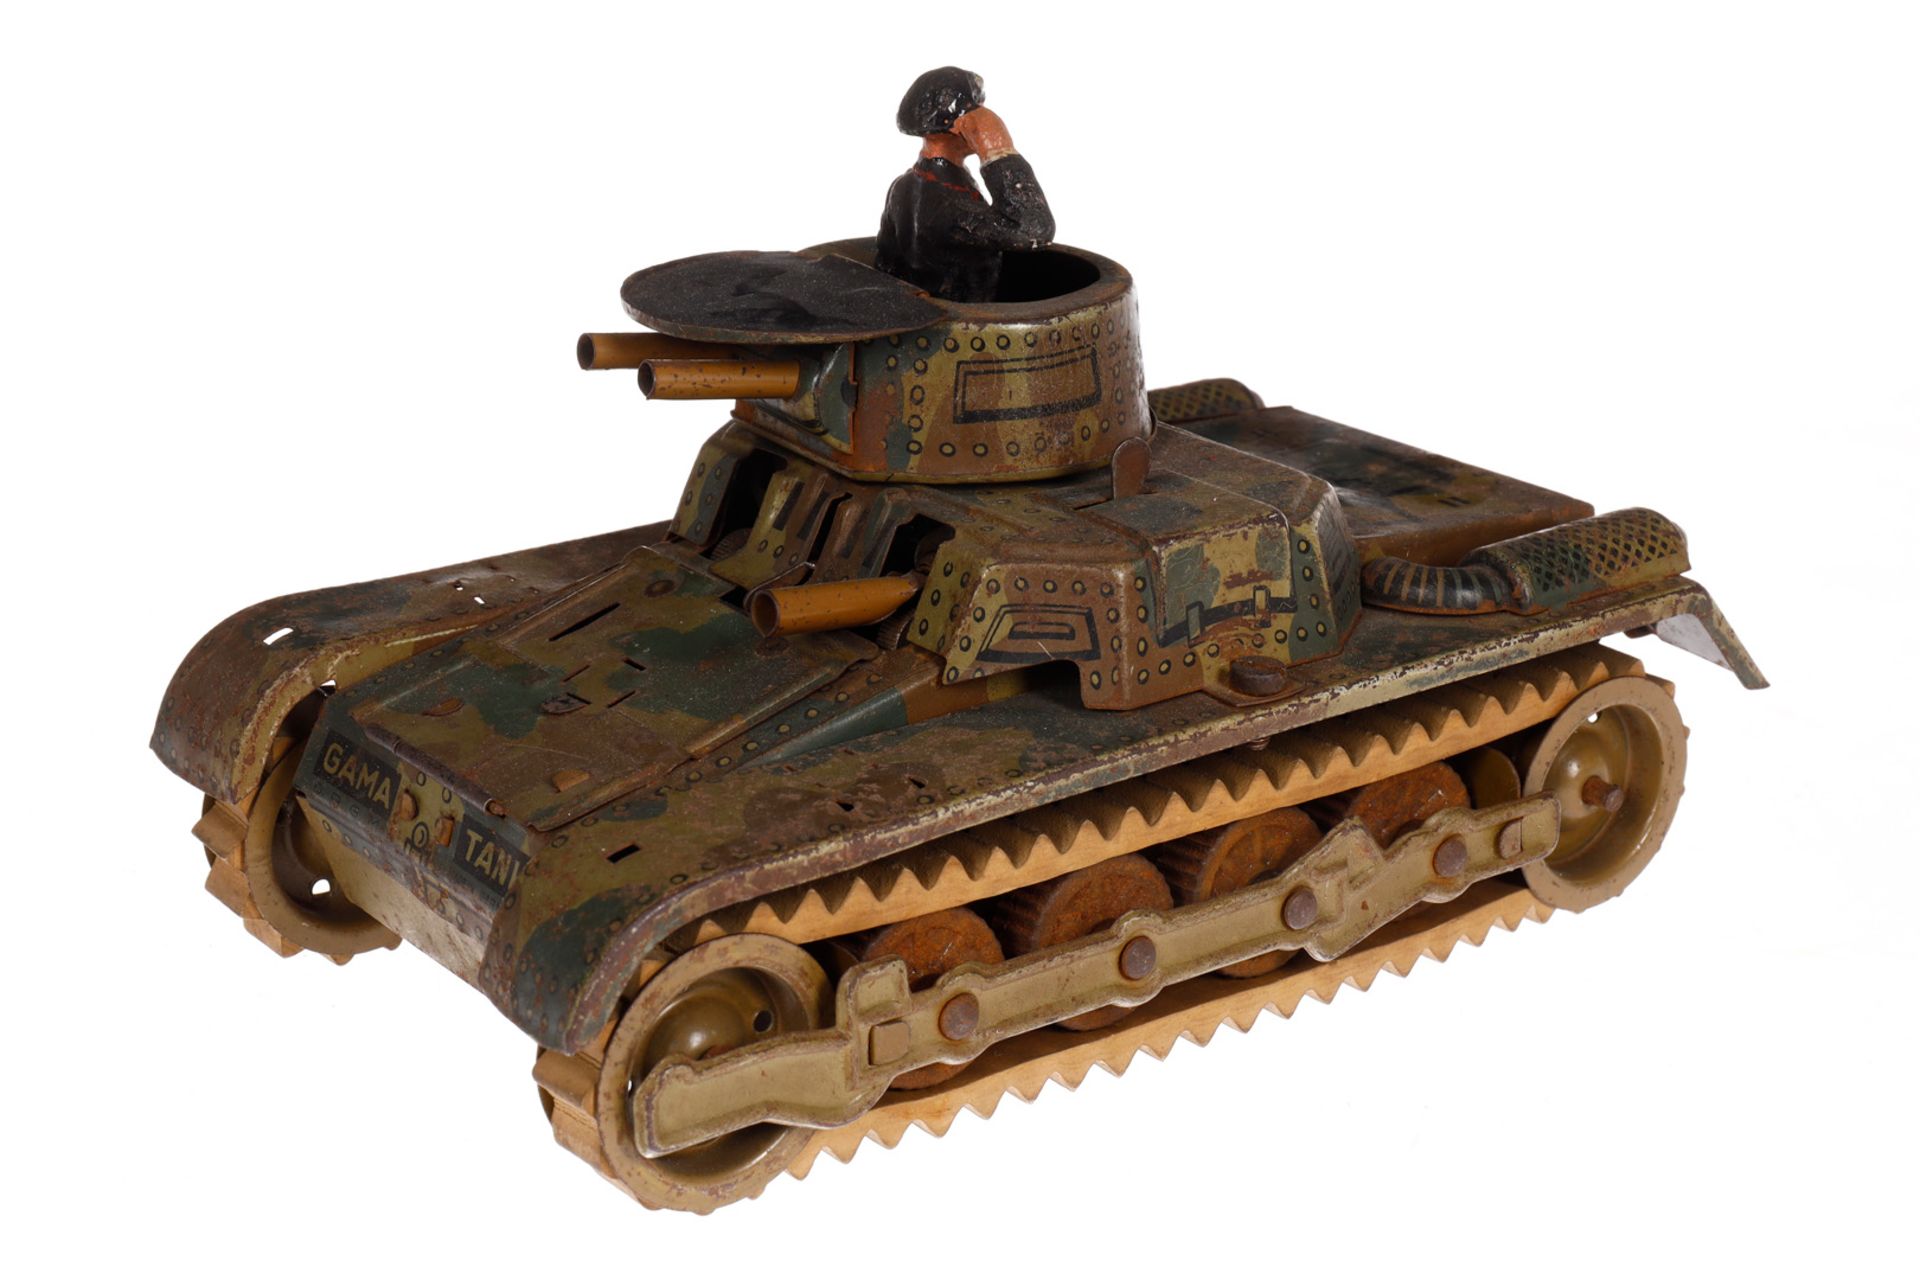 Gama Panzer, Mimikry CL, mit Kommandant, def., NV, LS, L 19, zum Herrichten - Image 2 of 3